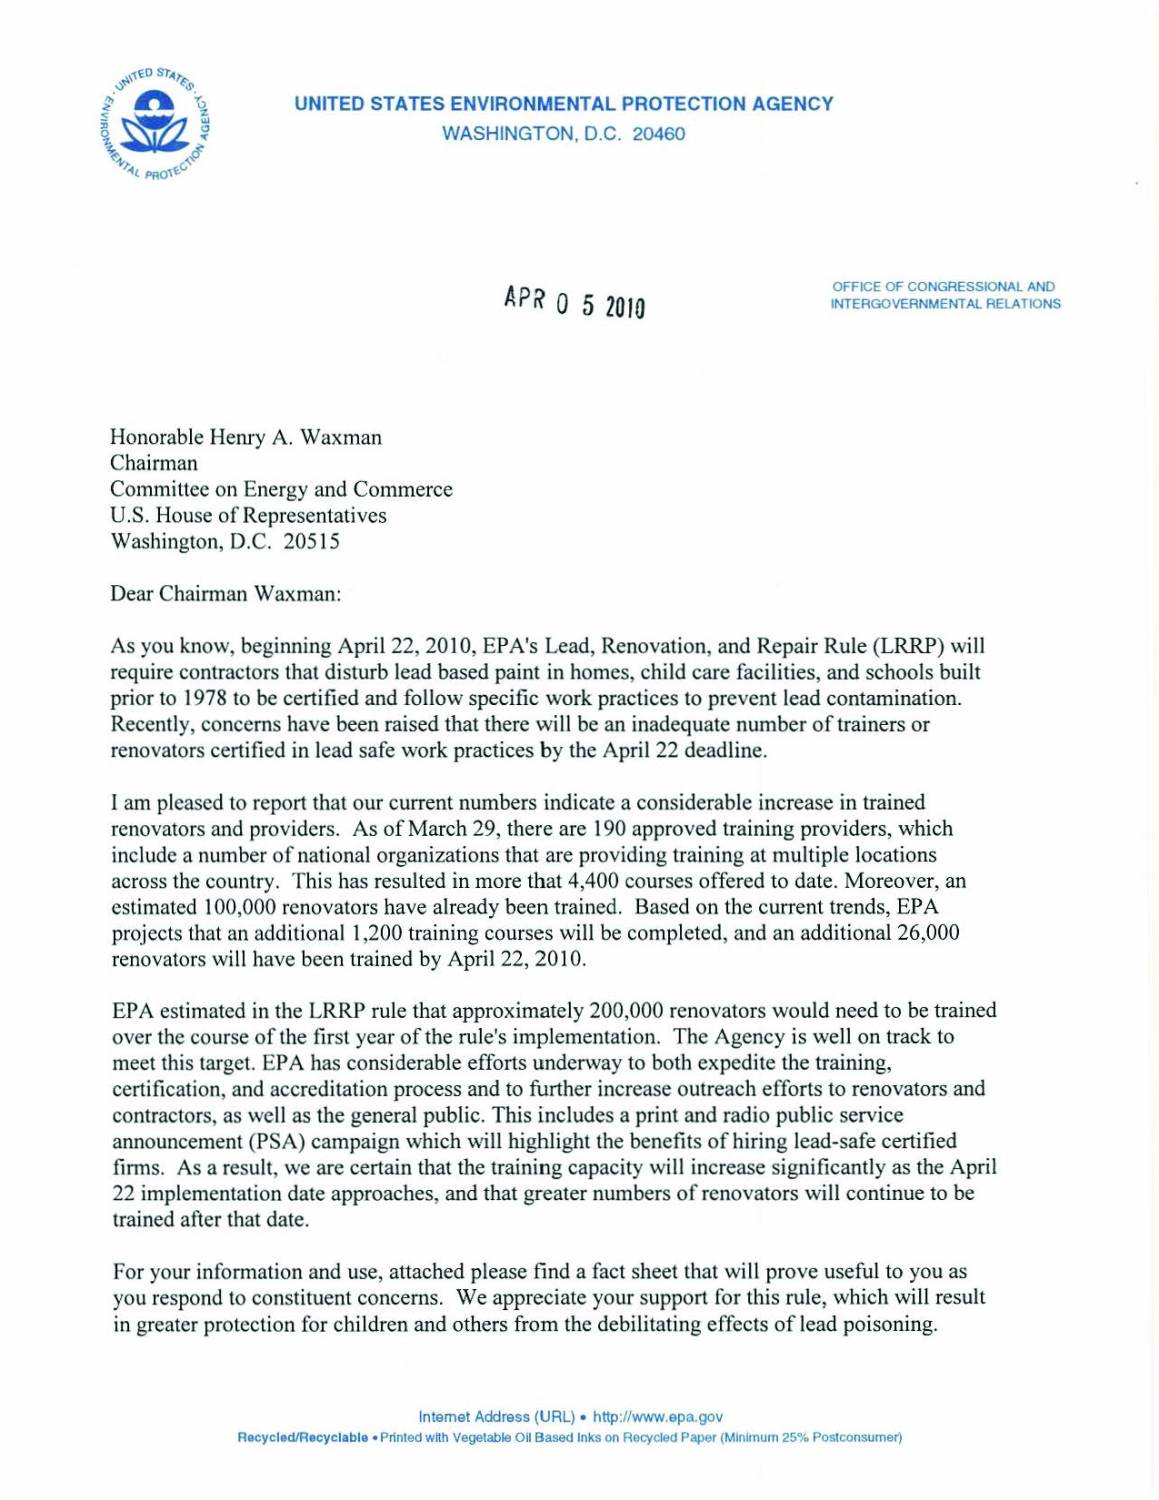 EPA Letter to Henry Waxman re: RRP Rule